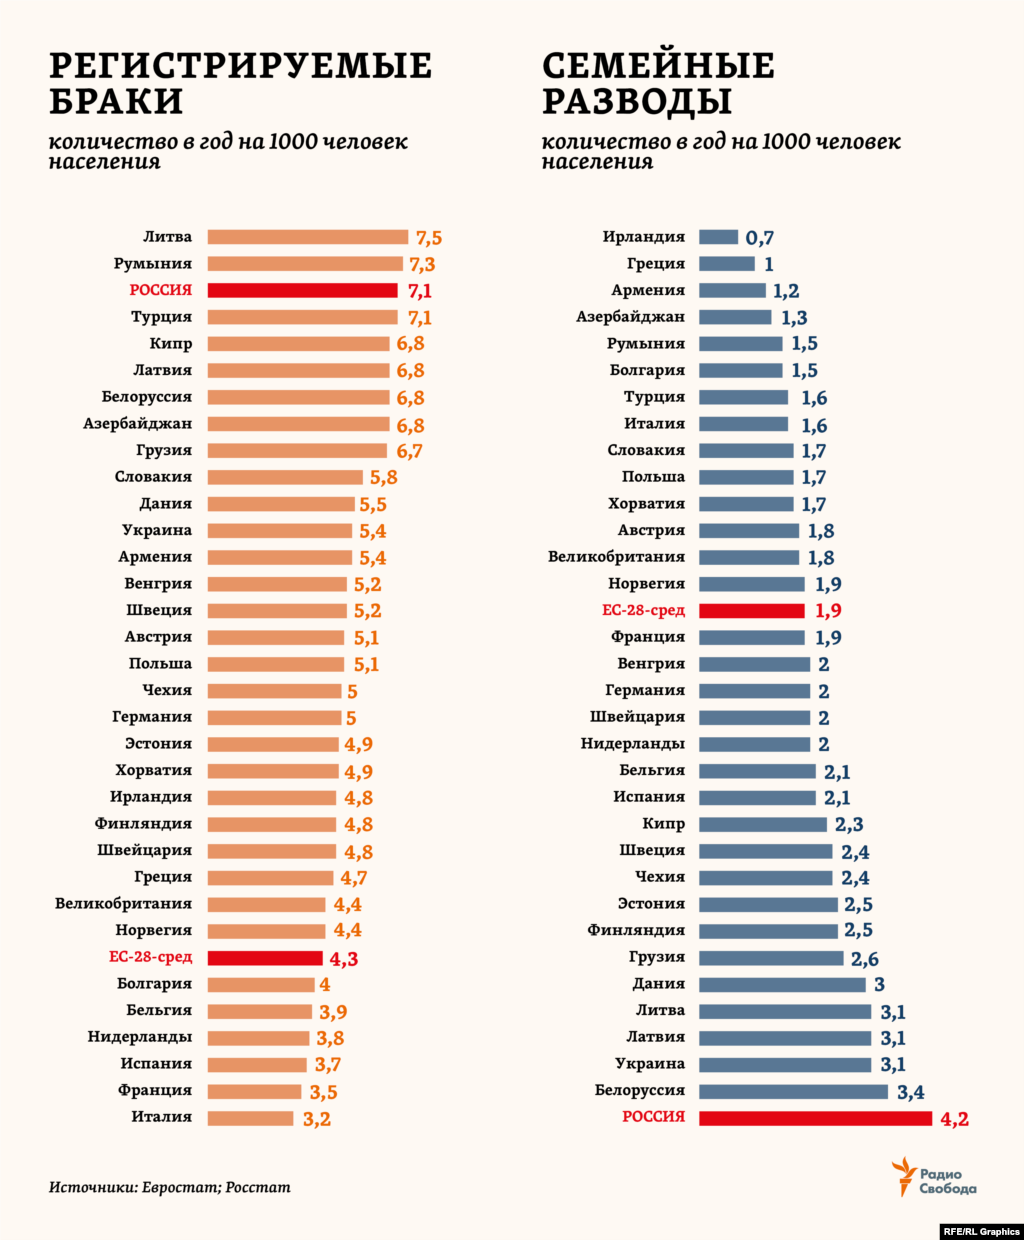 Самый большой перевес женского населения над мужским (+24,5 млн) &ndash; в Европе (ООН включает также в этот регион Россию, Украину, Белоруссию и Молдавию). Здесь за последние полвека количество регистрируемых браков сократилось почти 2 раза, а количество разводов, наоборот, возросло в 2,5 раза. В России, где, наоборот, на каждую тысячу мужчин приходится 1156 женщин (оценки Росстата за 2018 год), &ndash; один из самых высоких показателей по количеству браков. Но при этом и самый высокий, с большим отрывом от других стран региона &ndash; по разводам